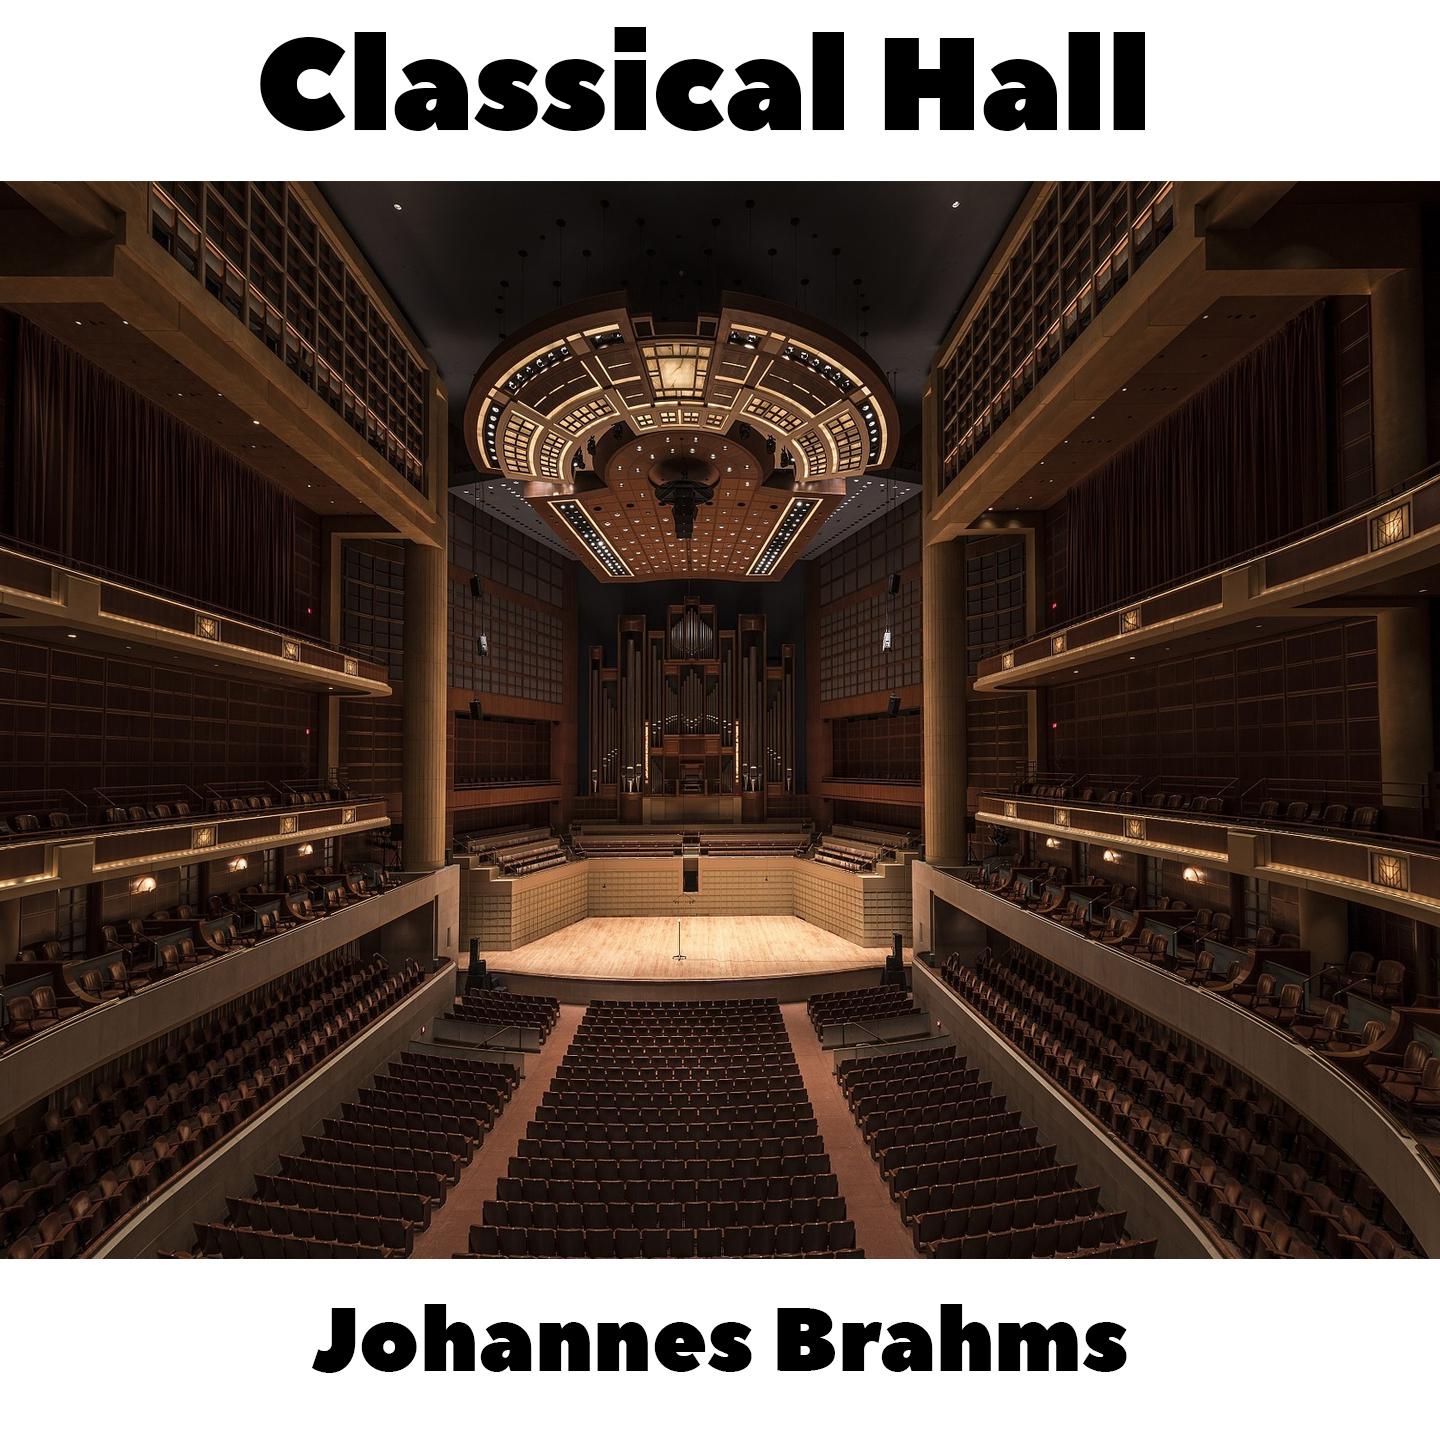 Johannes Brahms -  16 Waltzes, Op.39 - No.8 in Bb